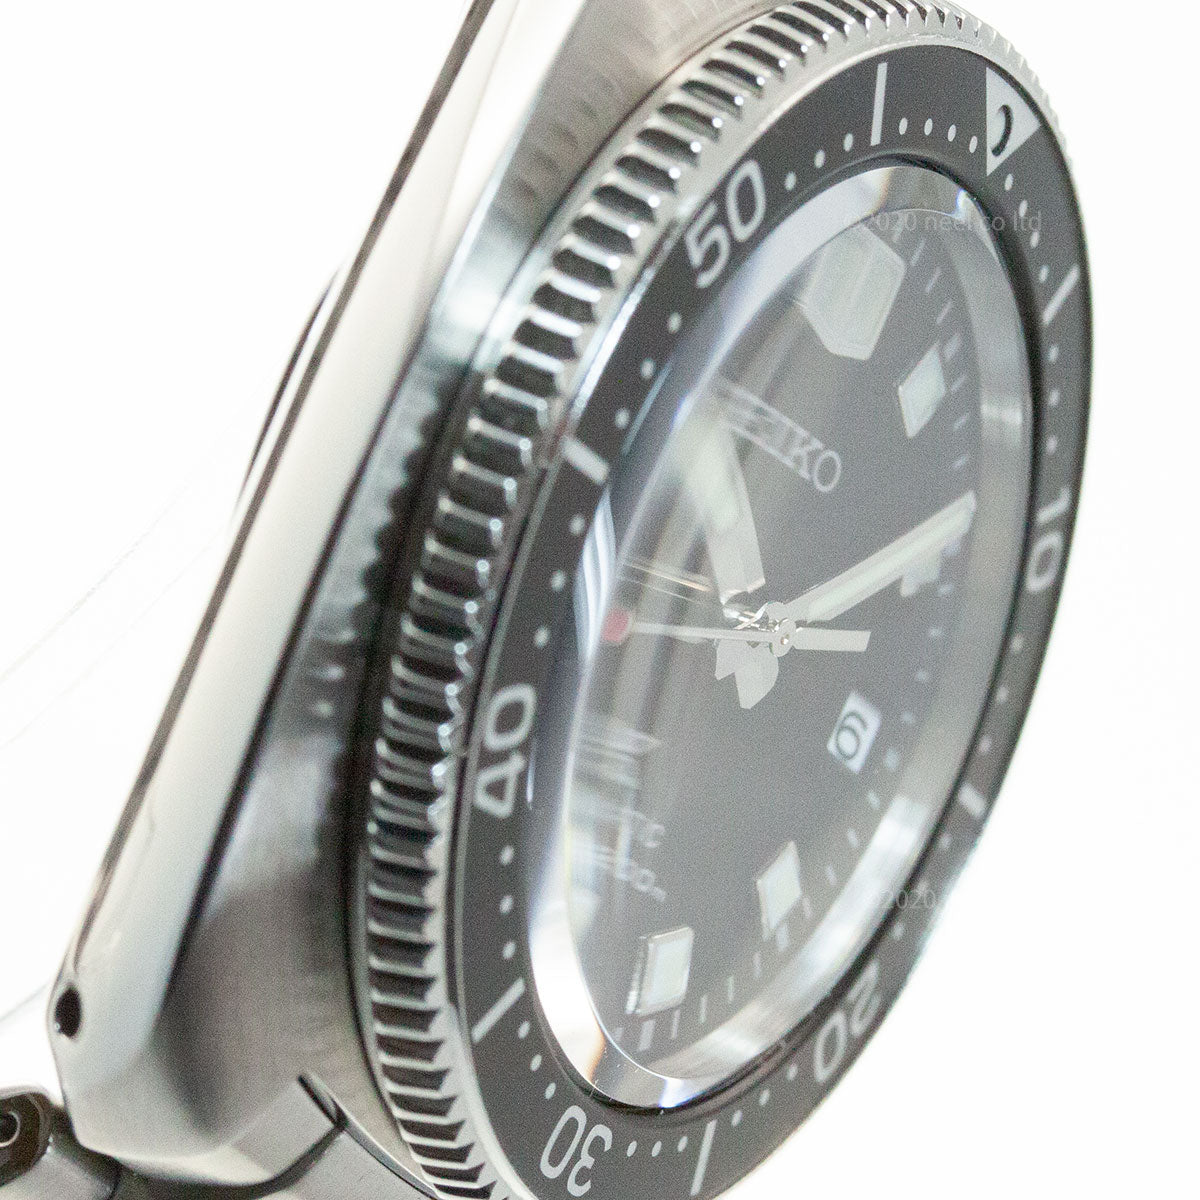 セイコー プロスペックス SEIKO PROSPEX 2ndダイバーズ 現代デザイン メカニカル 自動巻き コアショップ専用モデル 腕時計 メンズ SBDC109